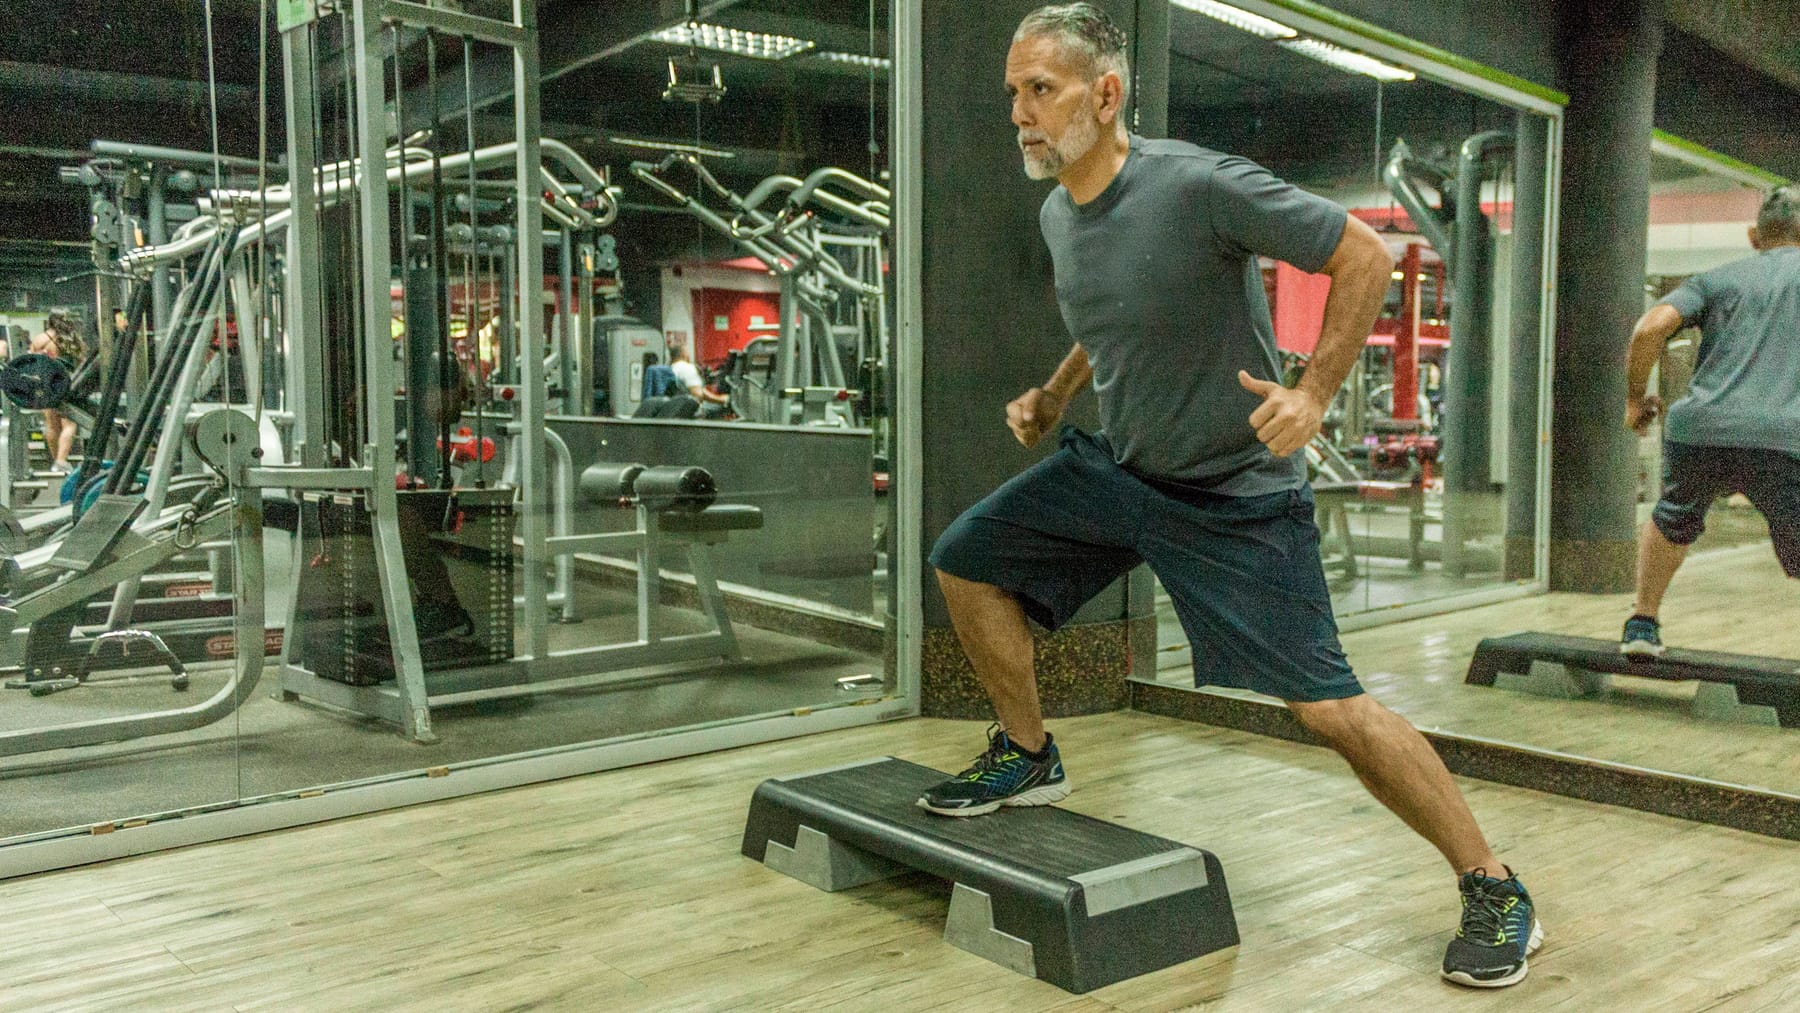 Muskelaufbau: Mit 60 Jahren einen Körper wie ein 40-Jähriger – geht das?